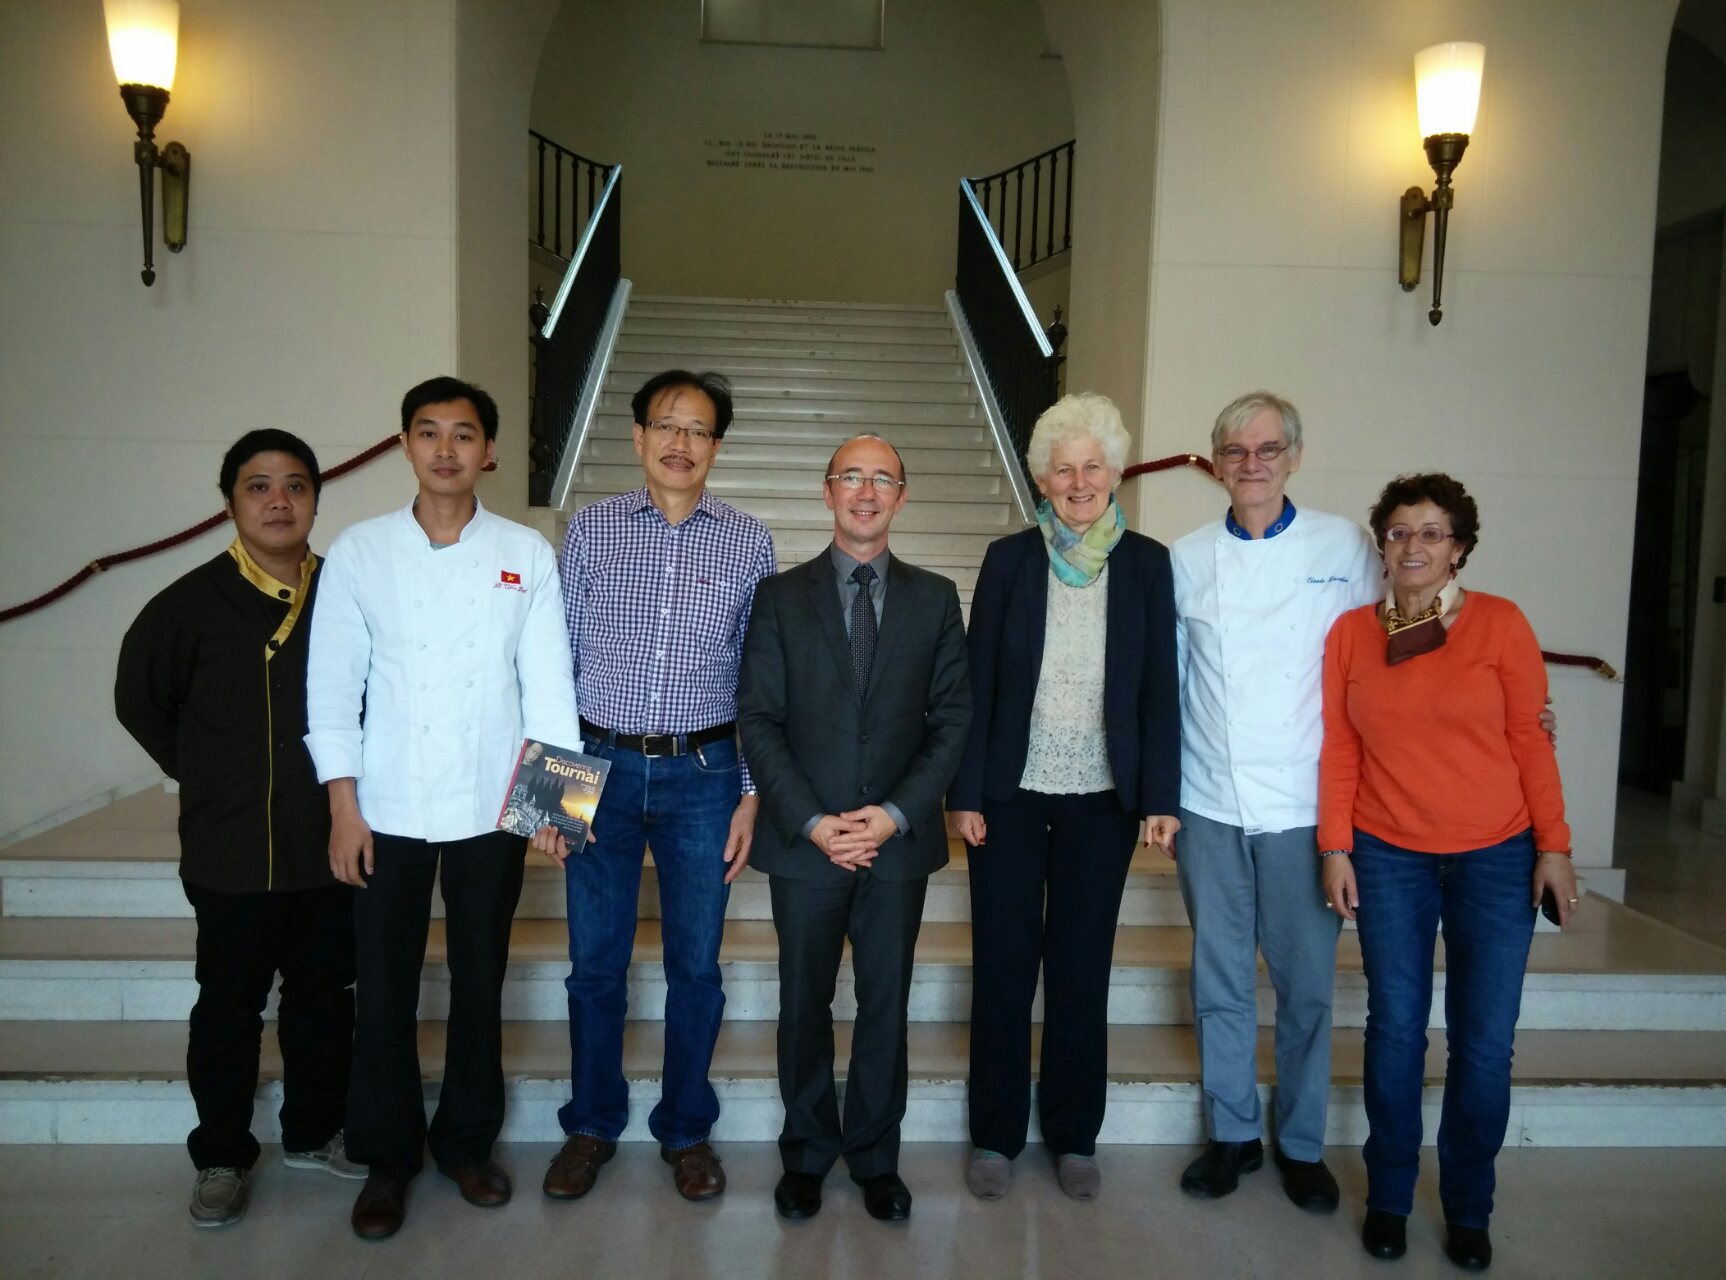 Rencontre entre Rudy Demotte et des cuisiniers vietnamiens à Tournai